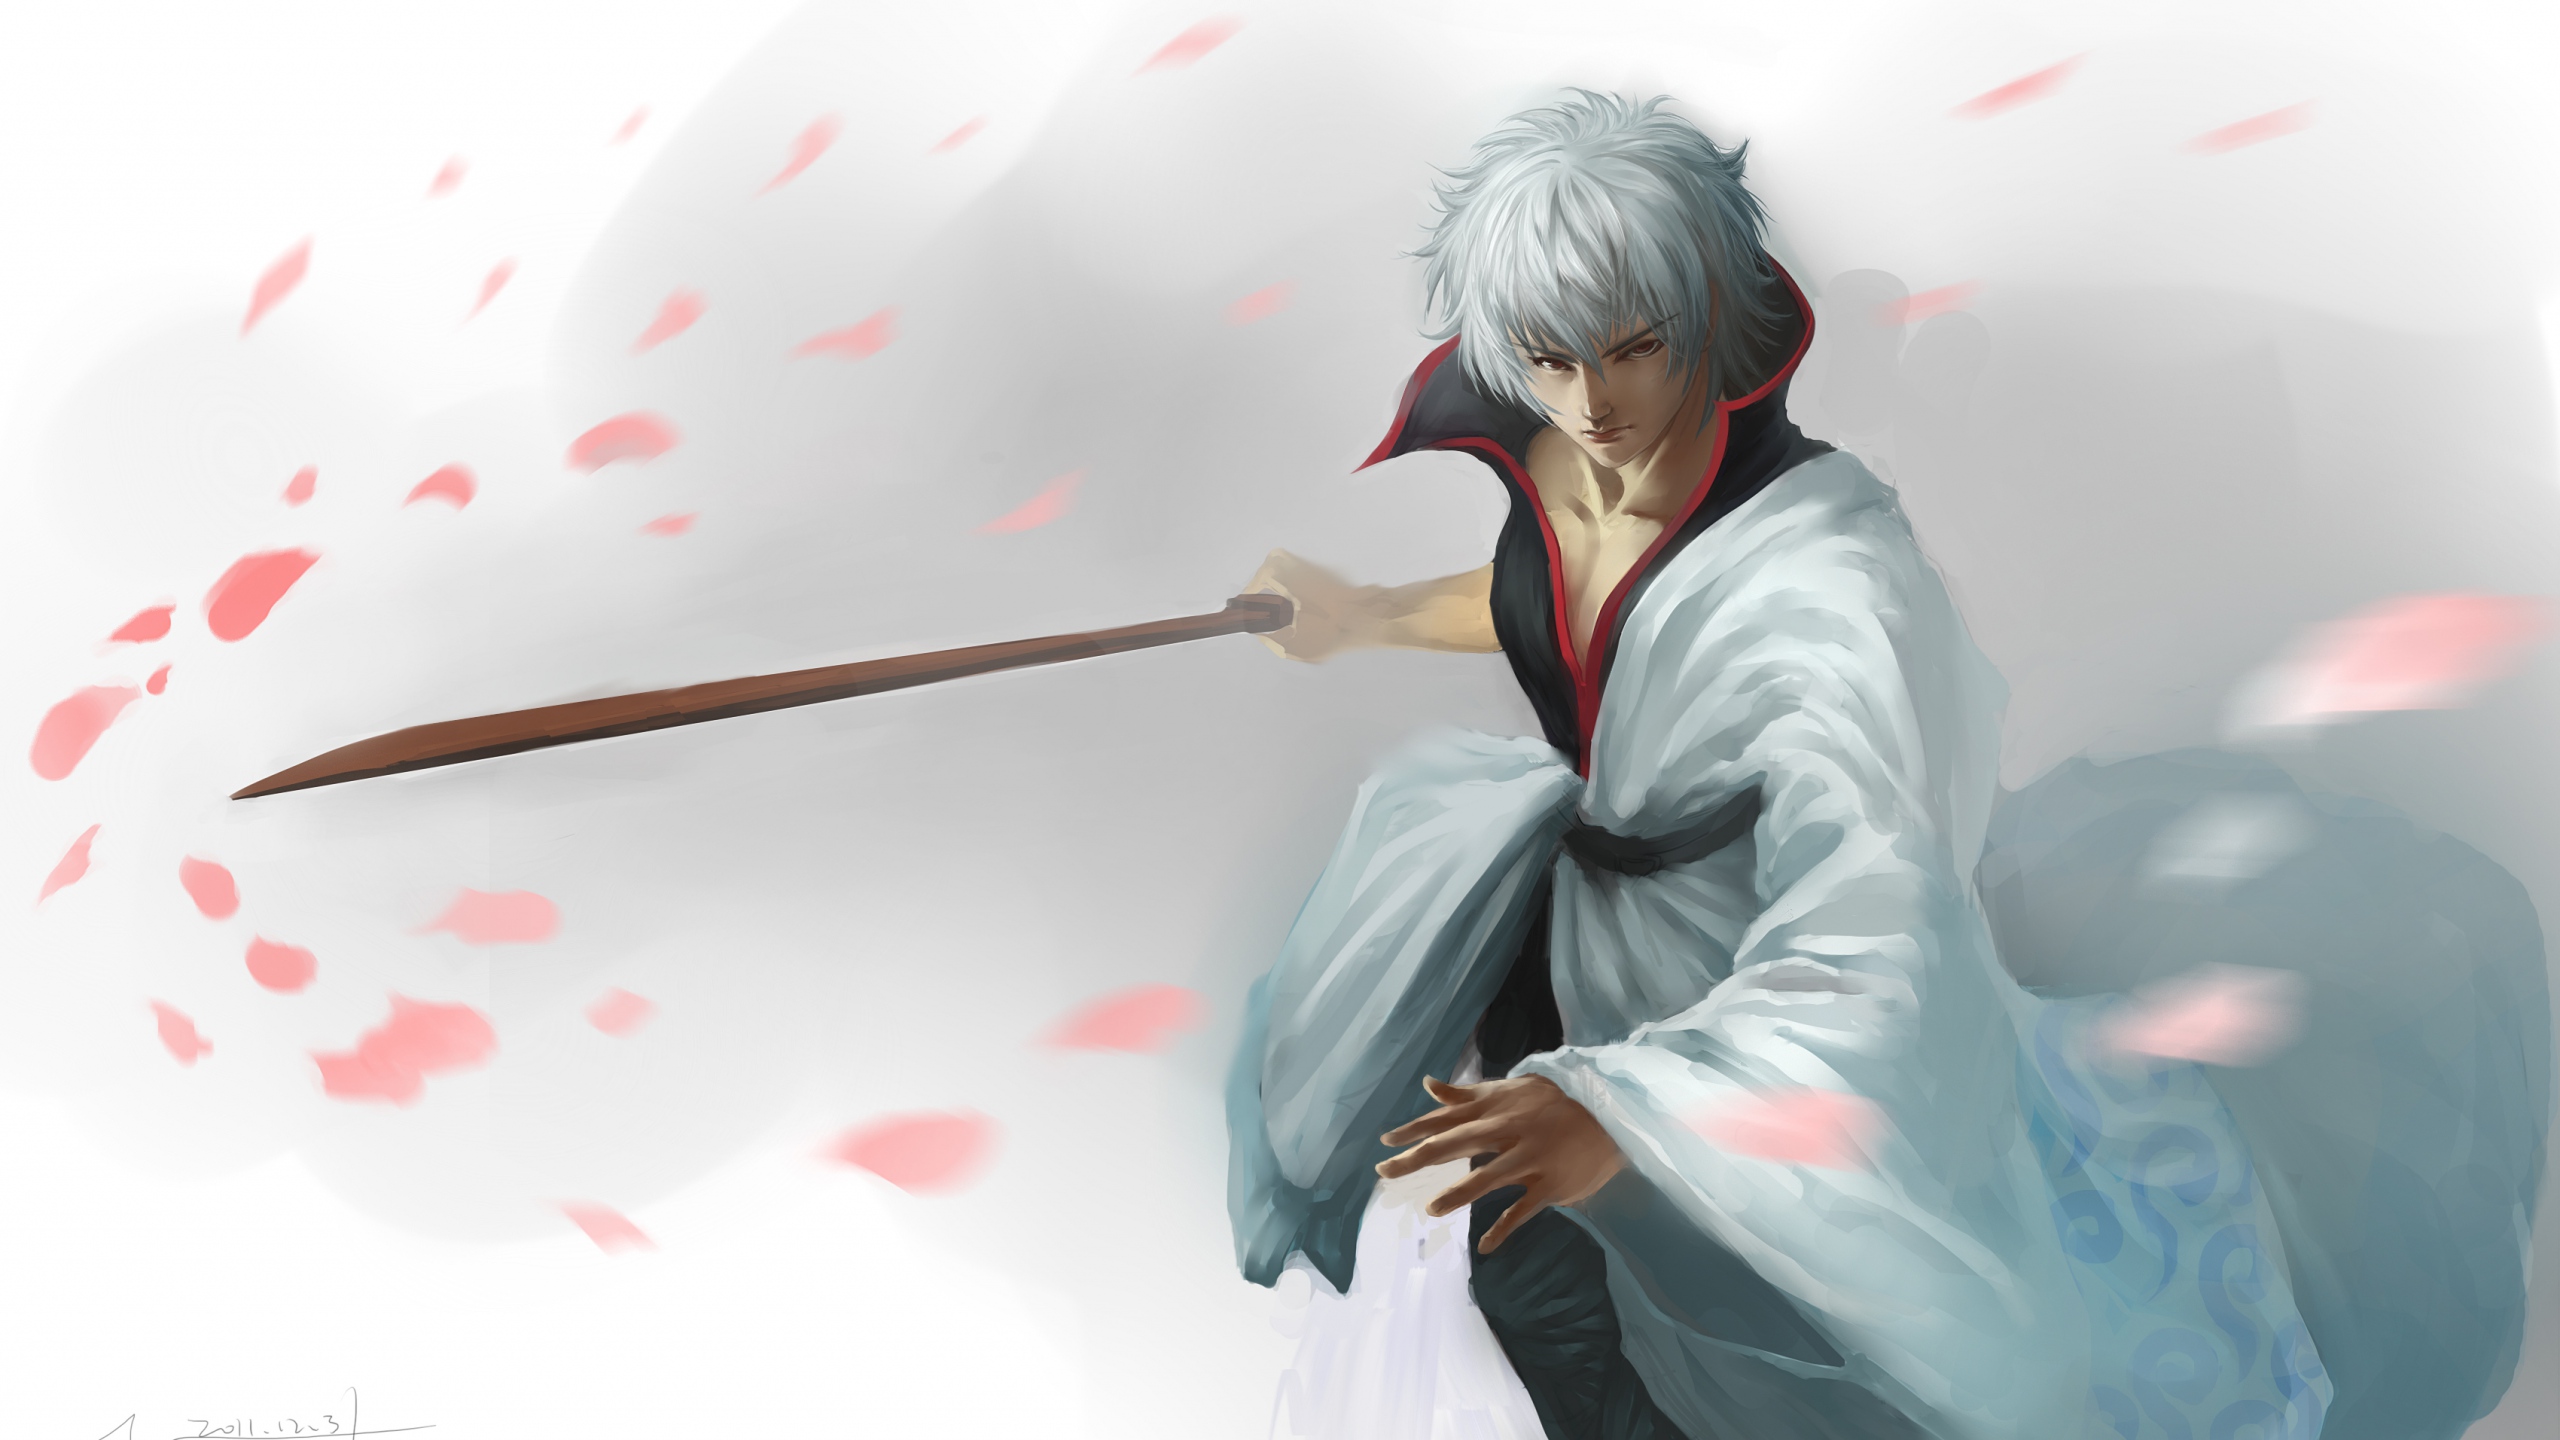 gintama-sakata-gintoki-art-hanging-man-katana-sword-petals-2560x1440.jpg